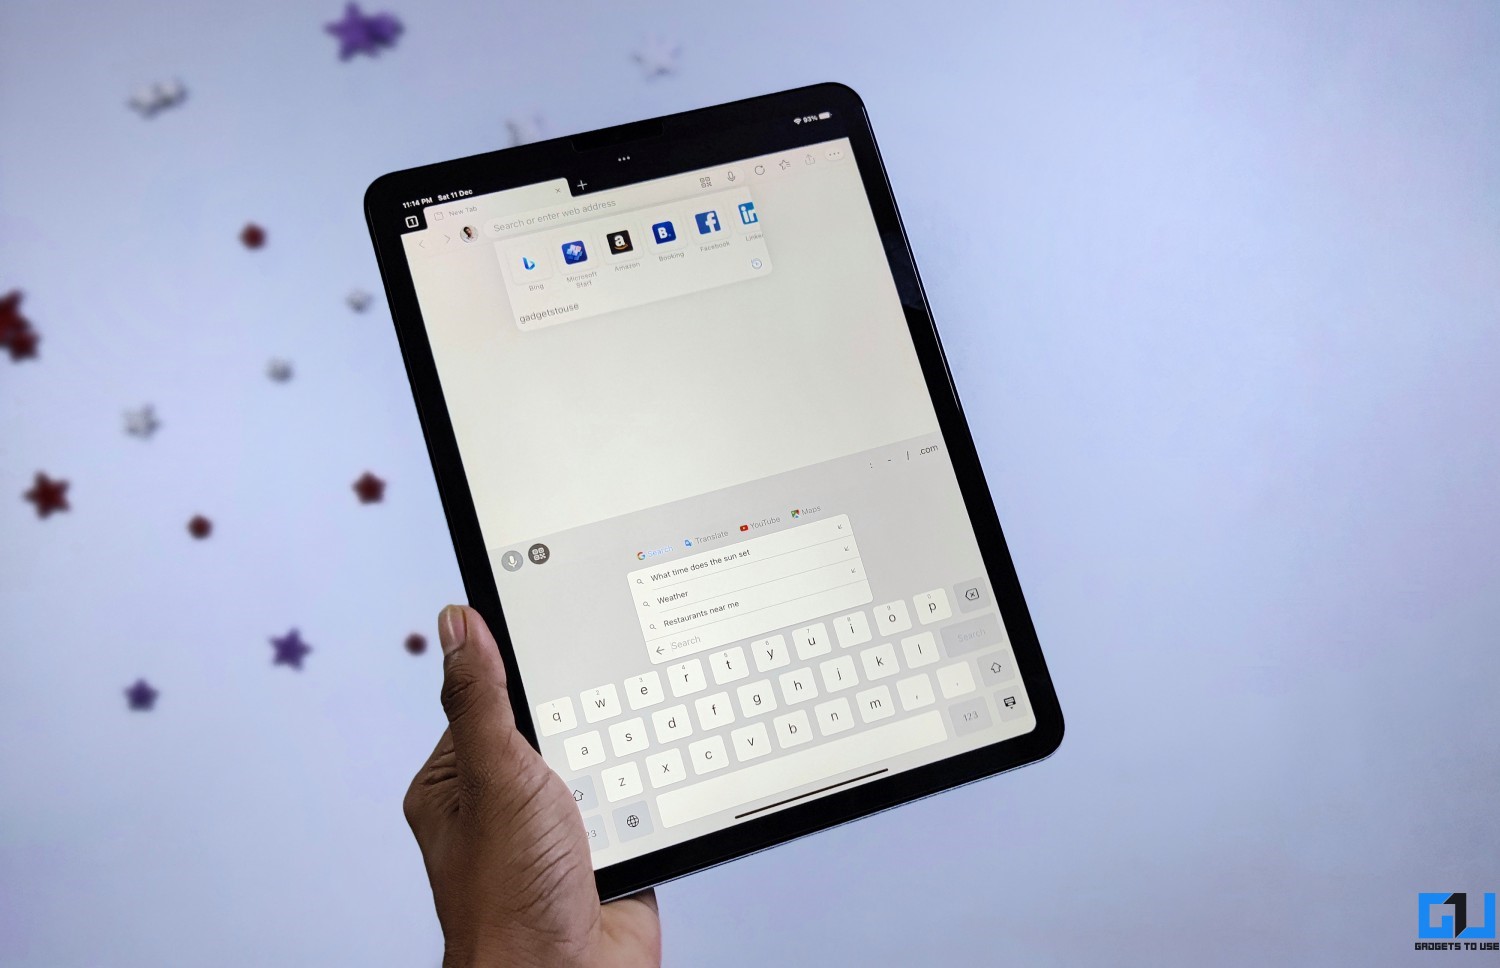 Set Gboard Keyboard as Default Keyboard on iPad